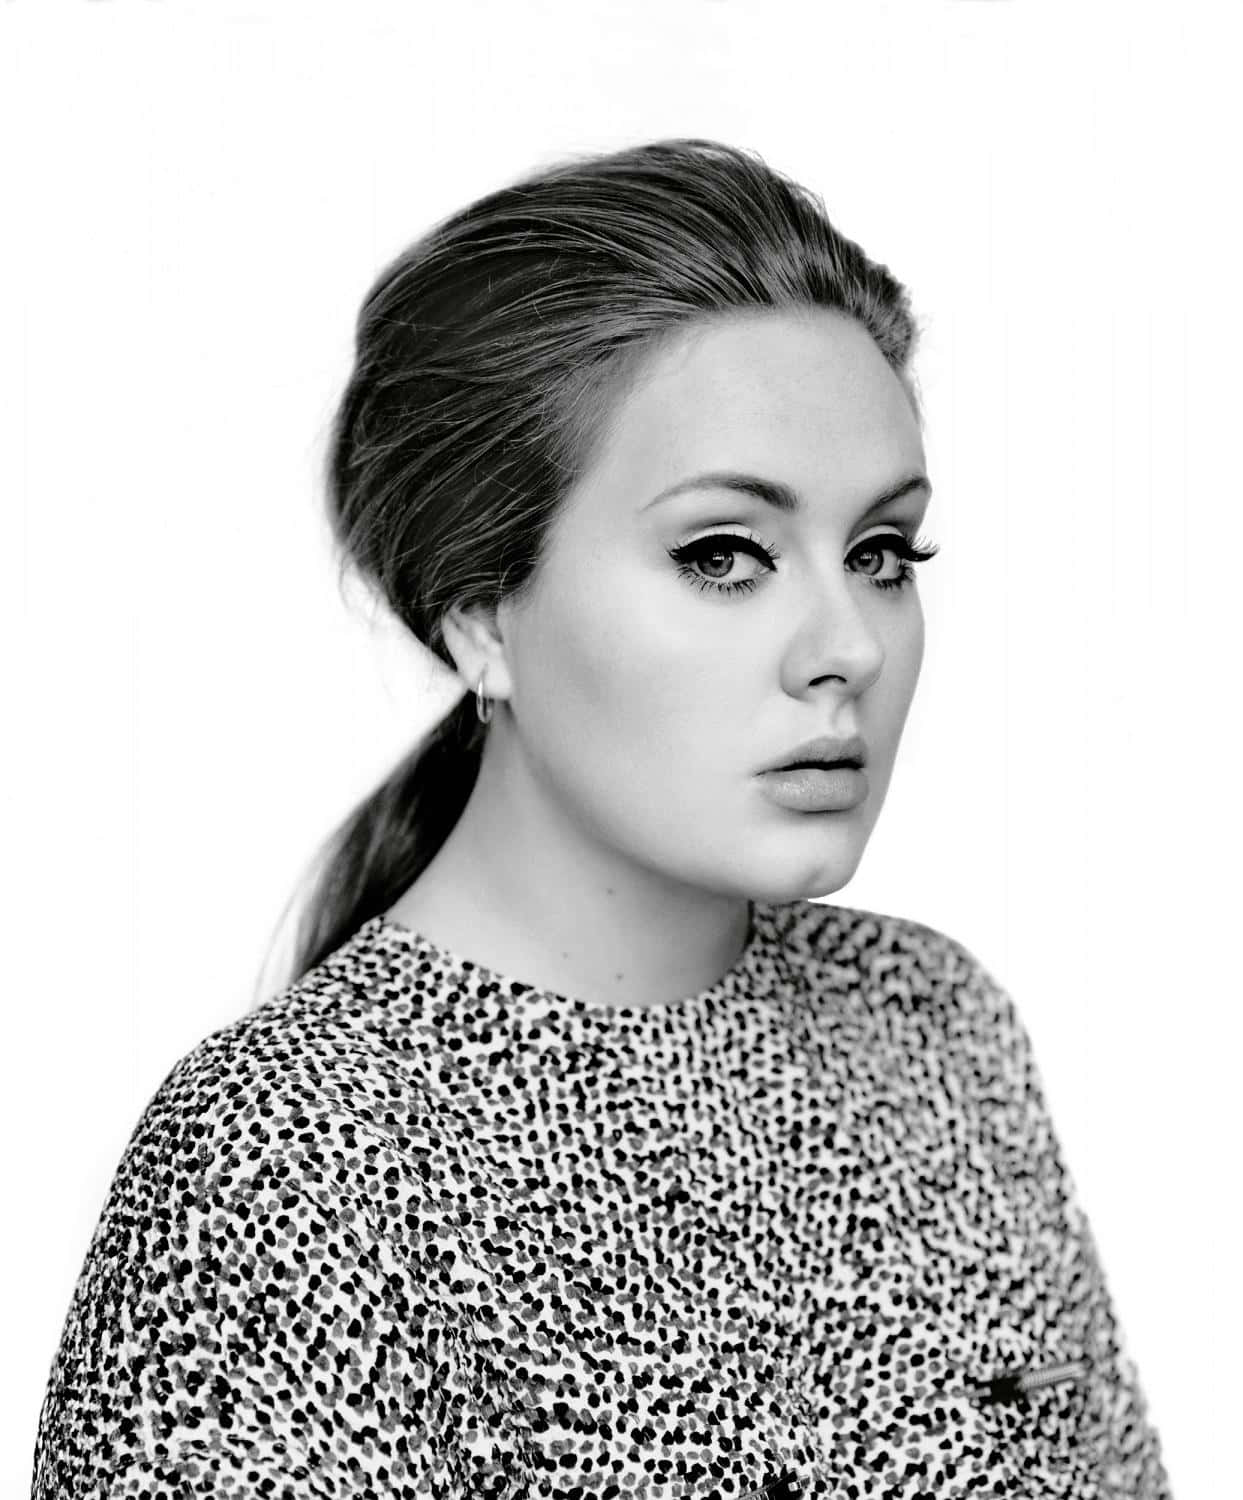 Fundode Tela Da Adele.